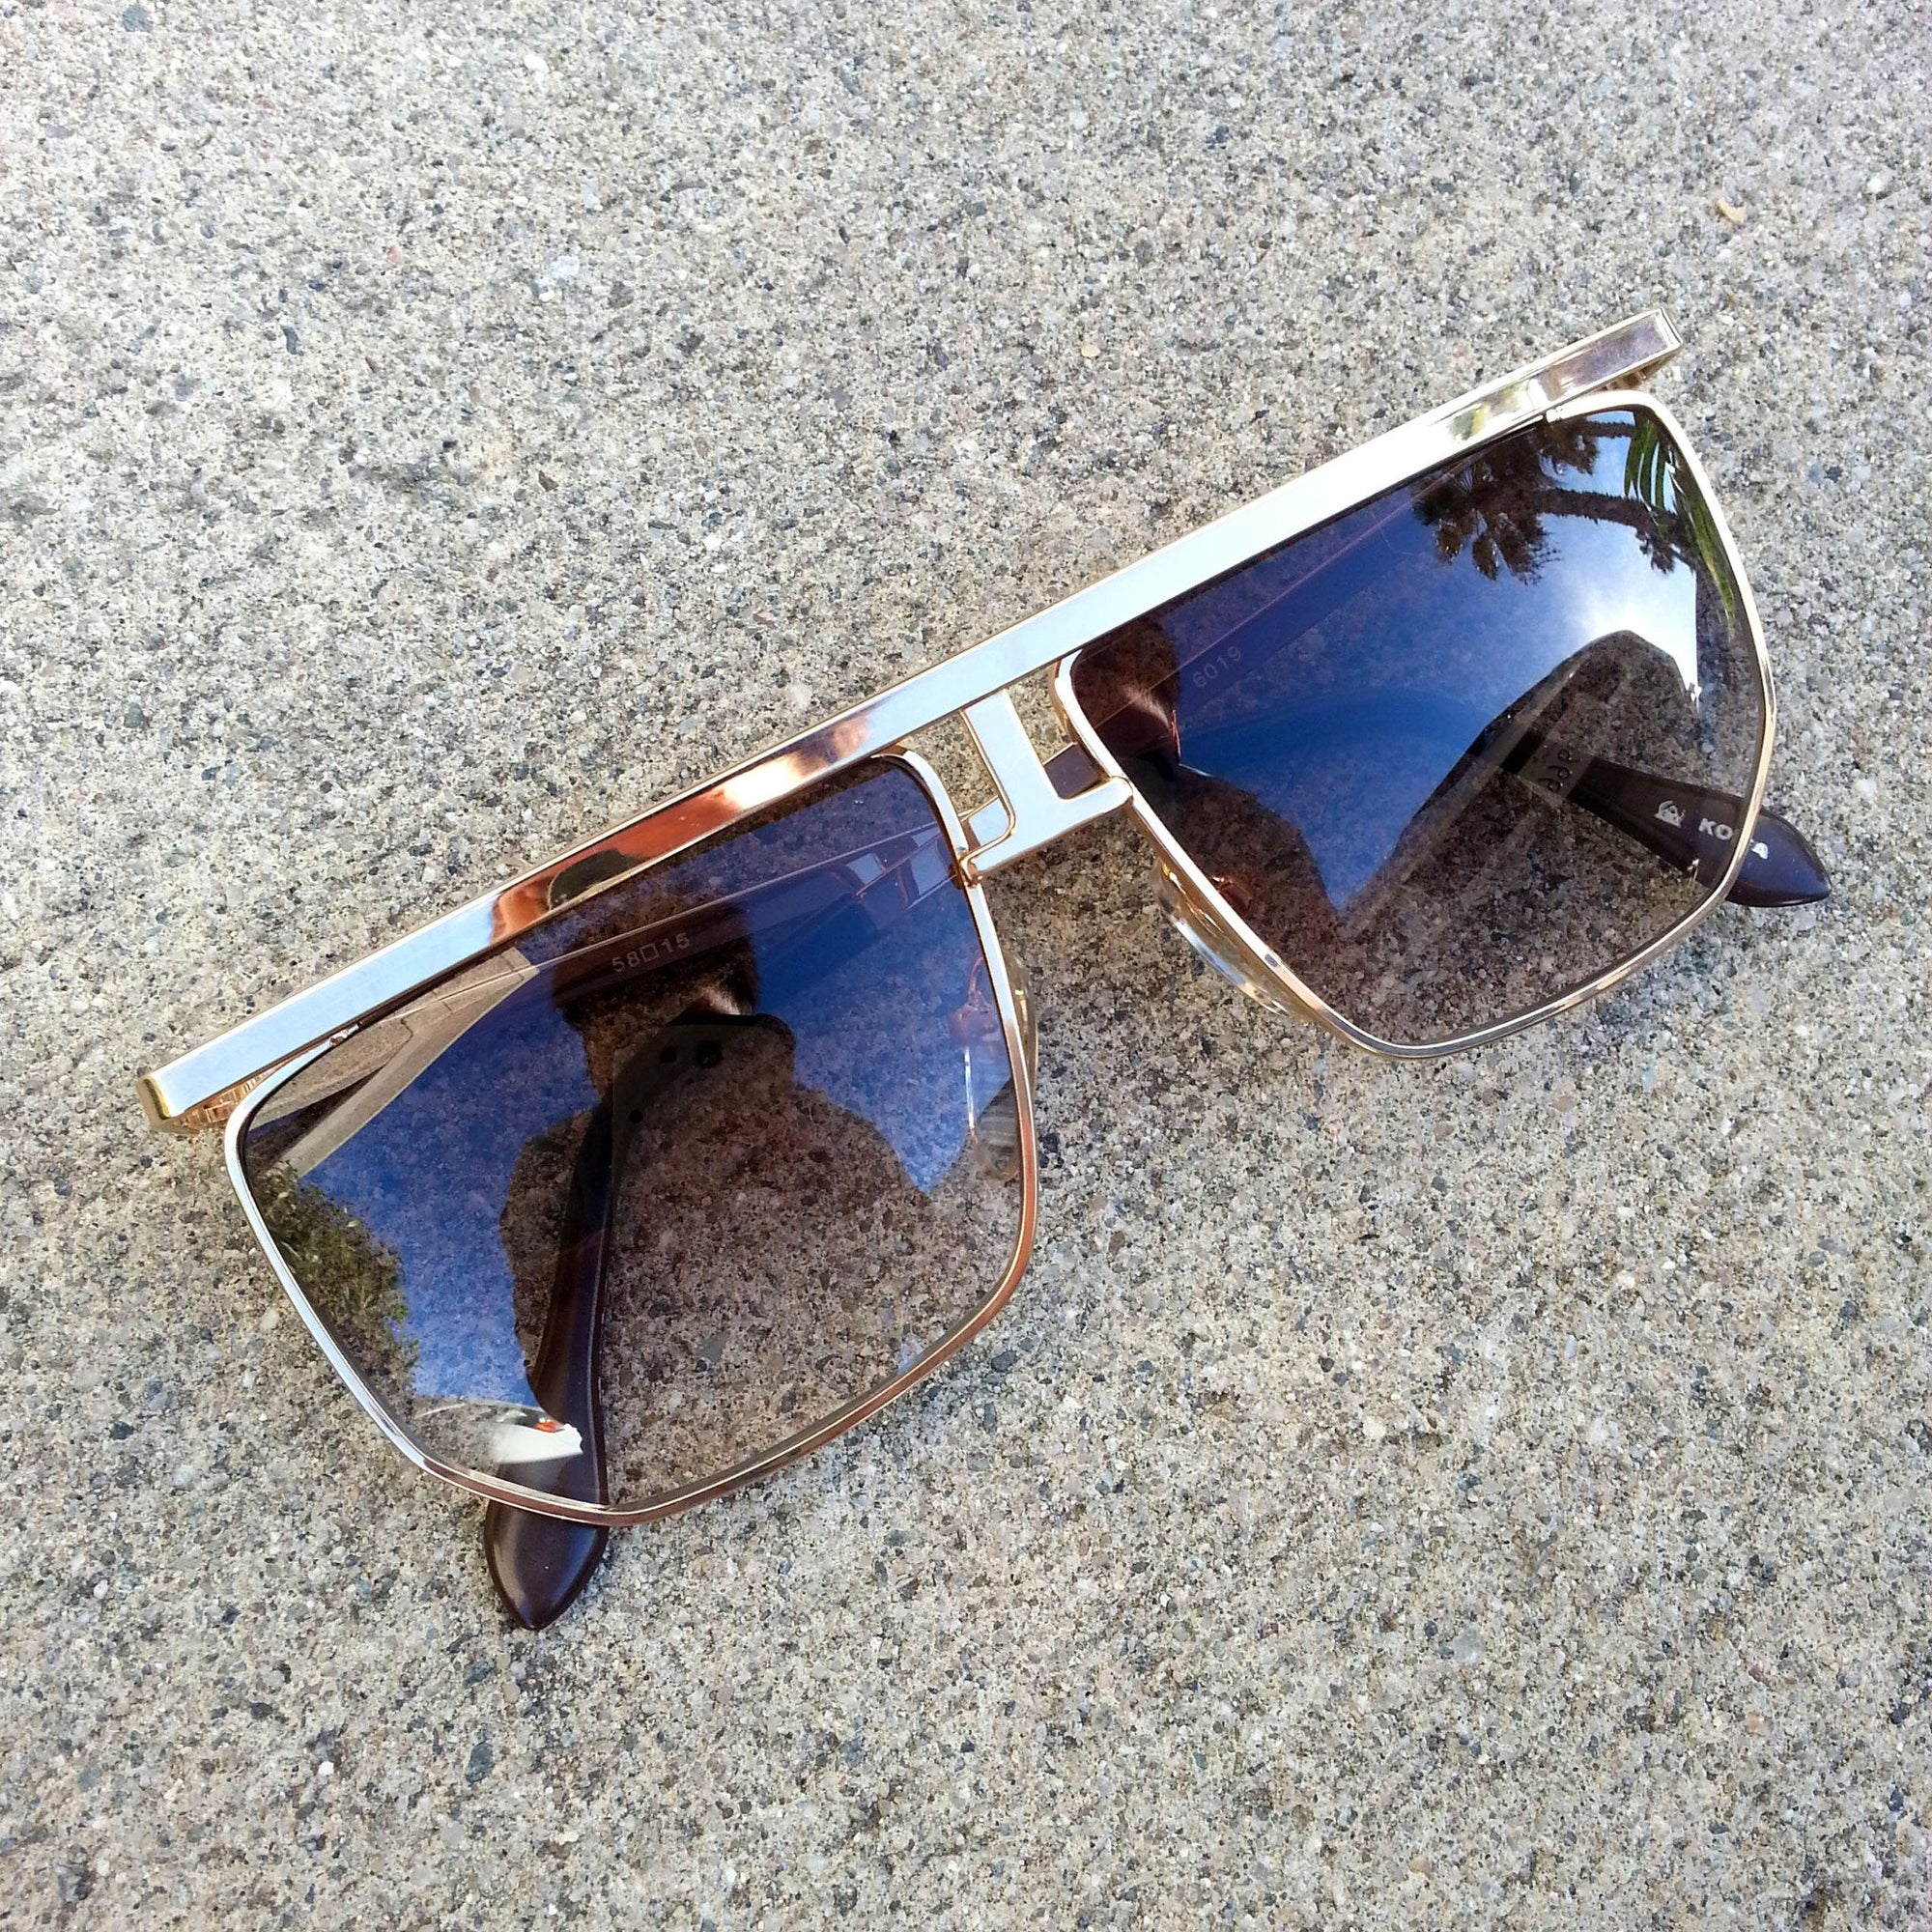 flat top sunglasses